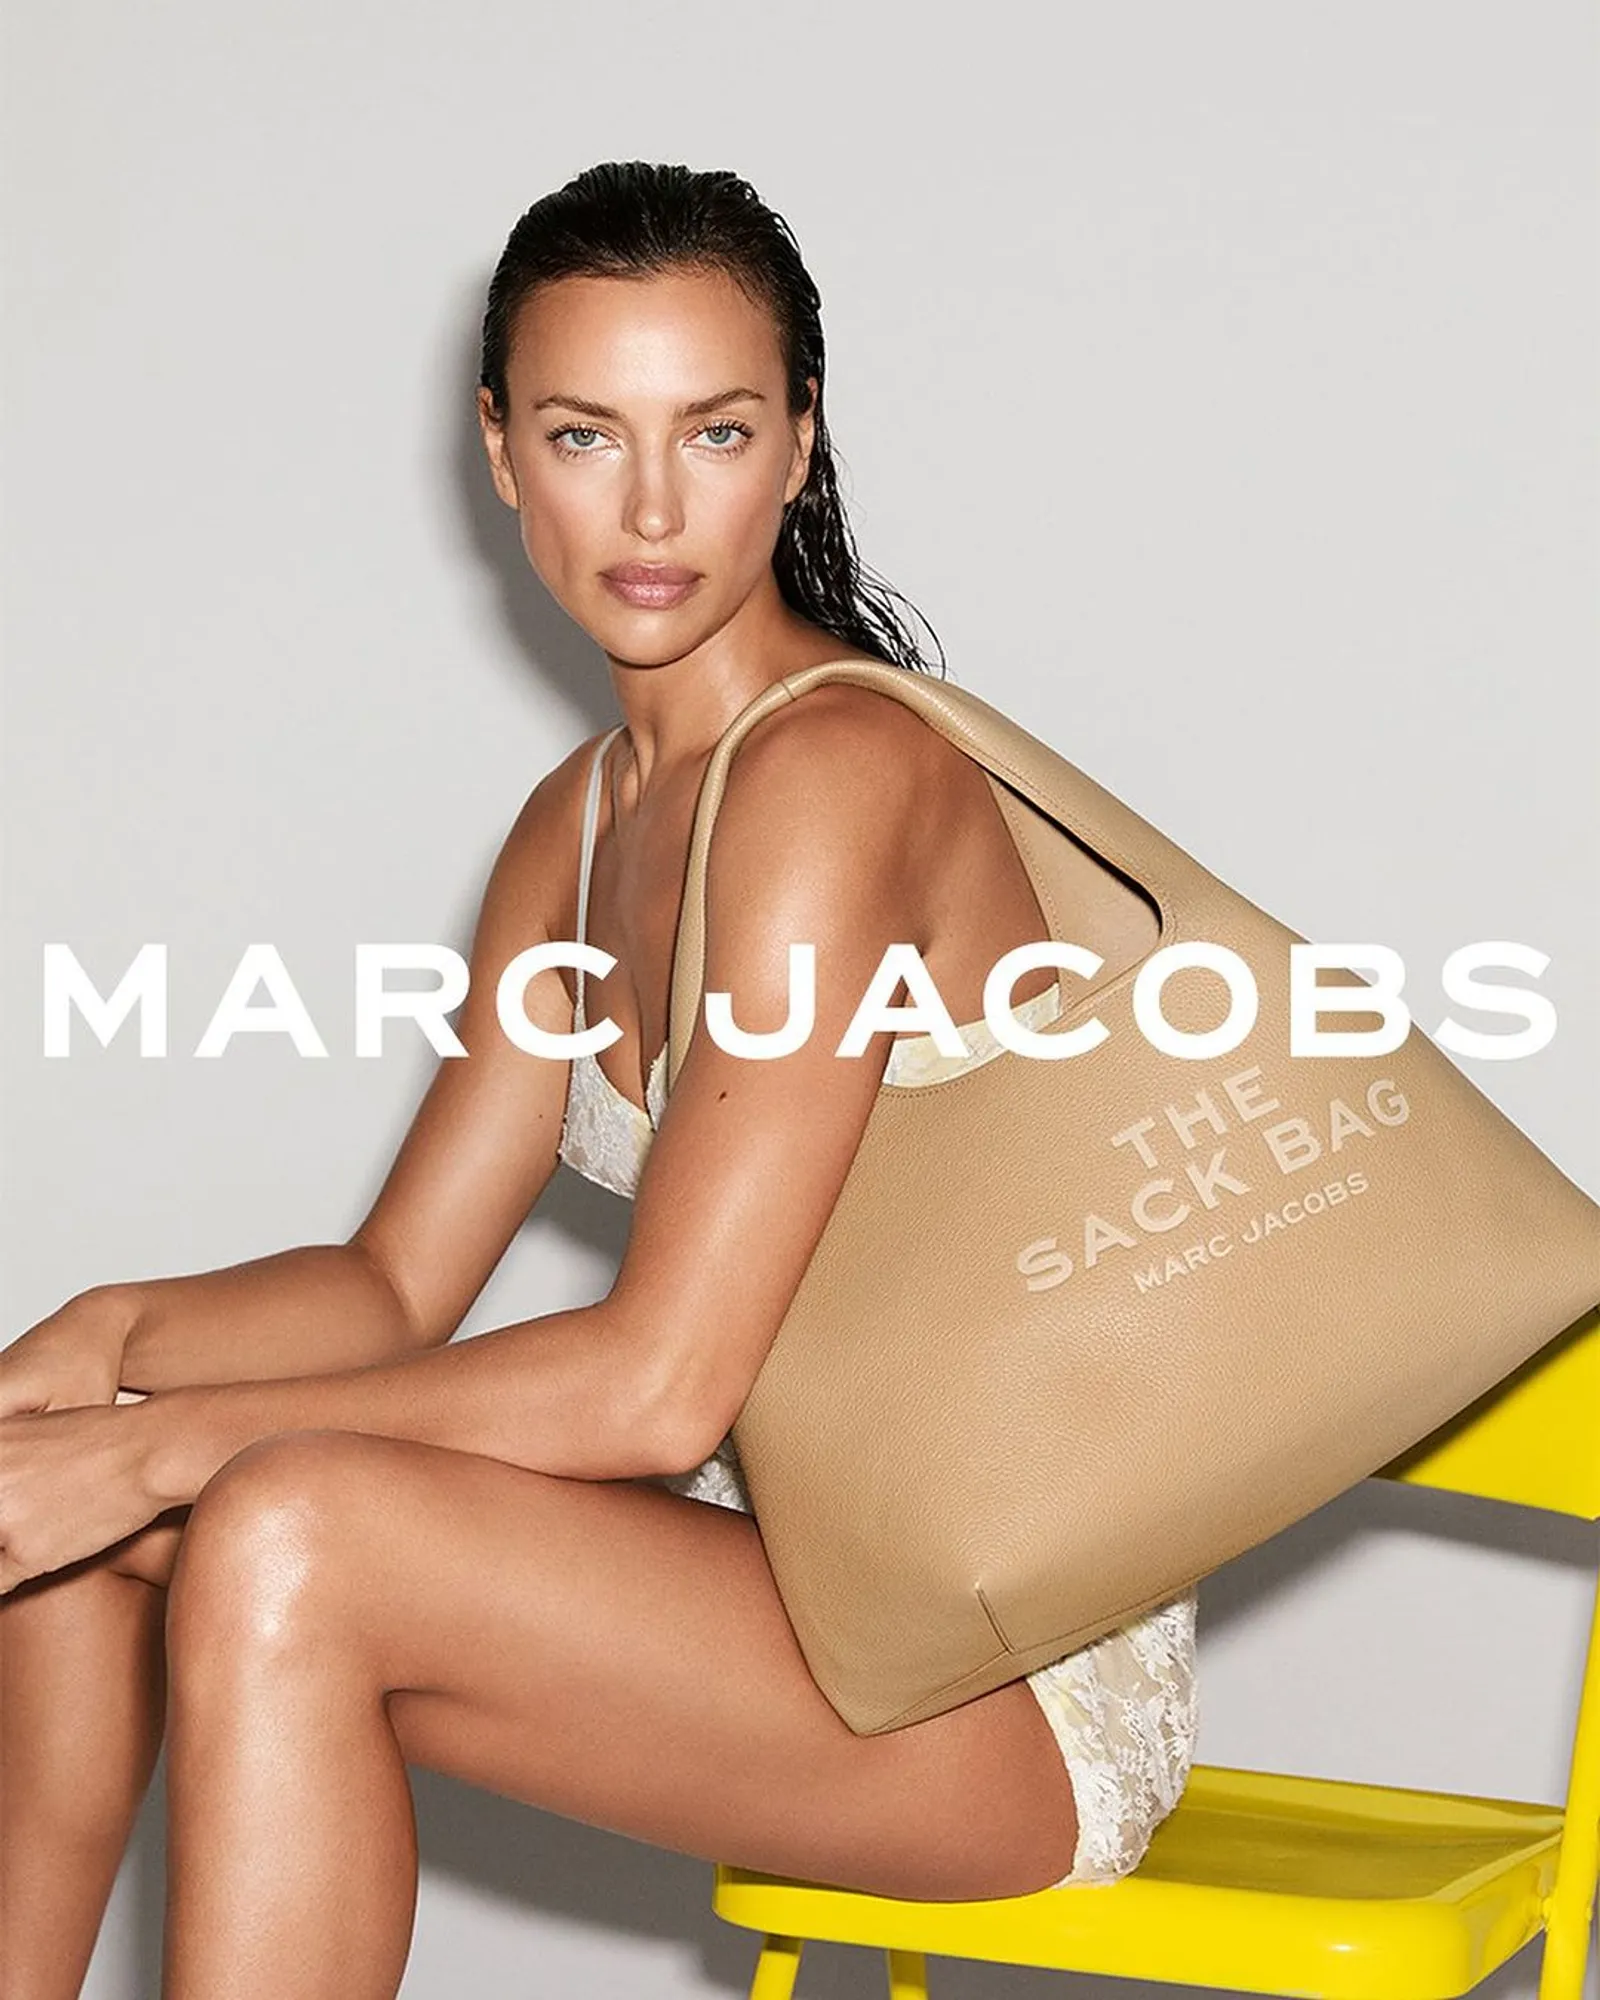 Potret Para Seleb untuk Campaign Terbaru Marc Jacobs 'The Sack Bag'